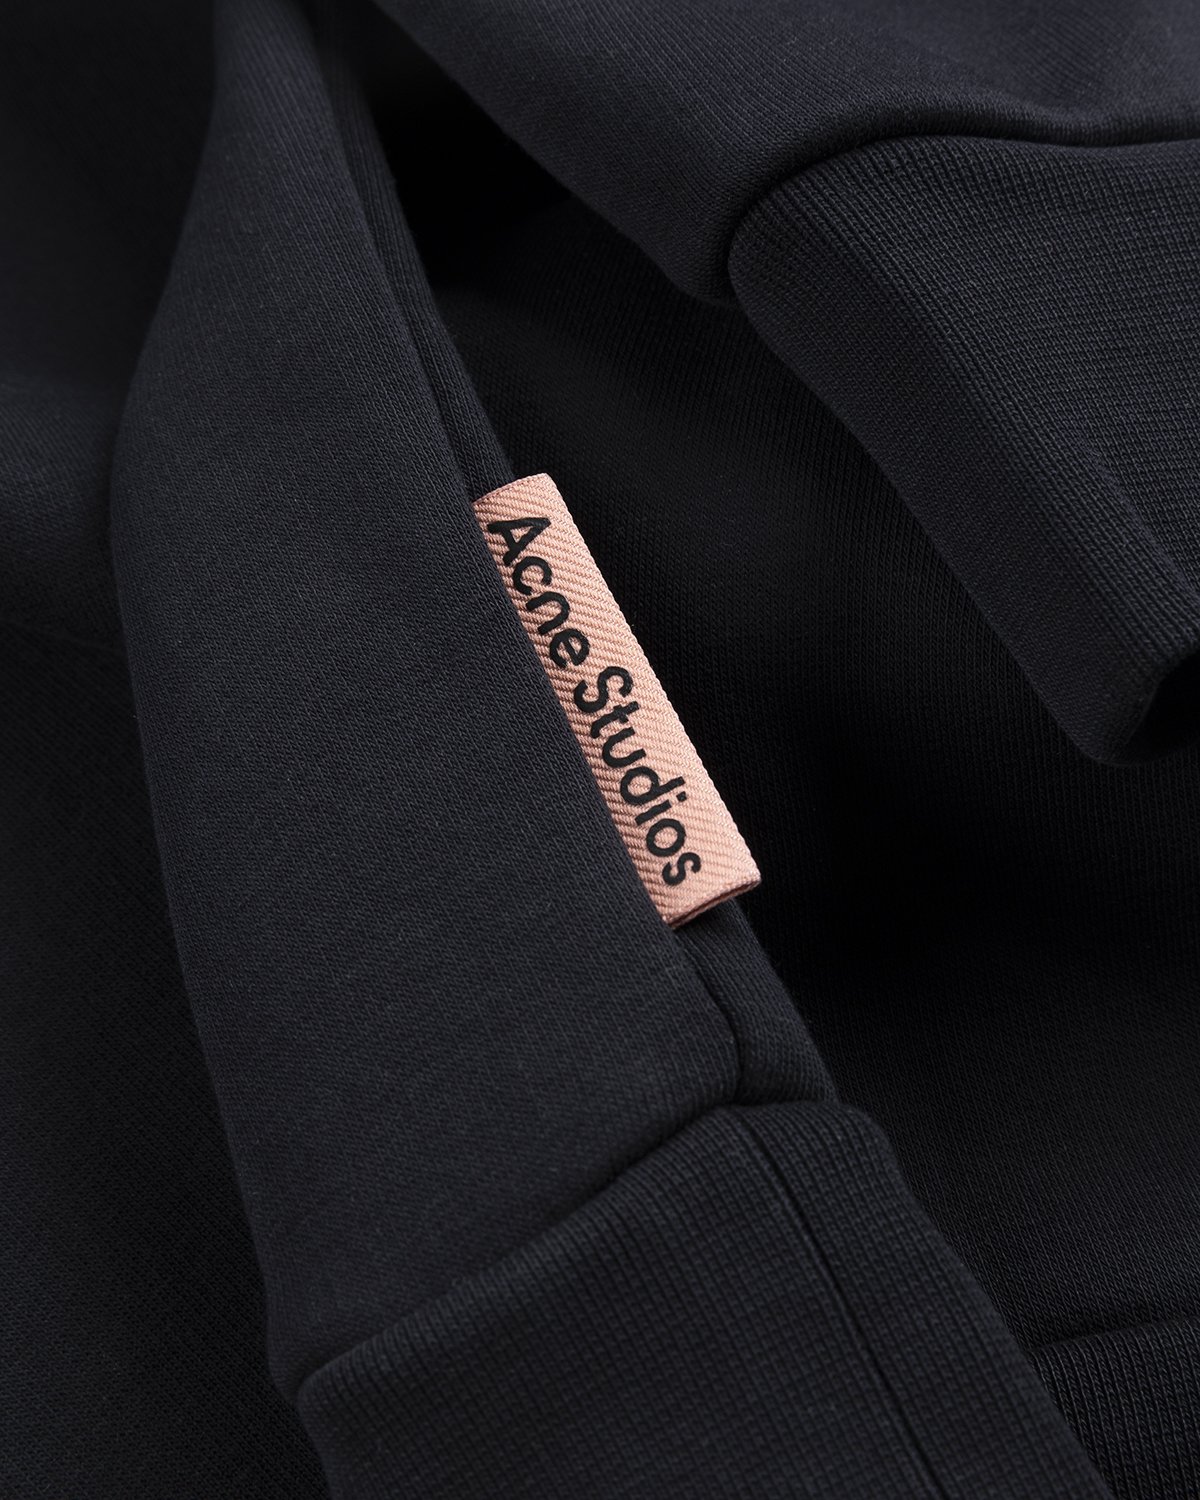 Acne Studios - Brushed Sweatshirt Black - Clothing - Black - Image 4